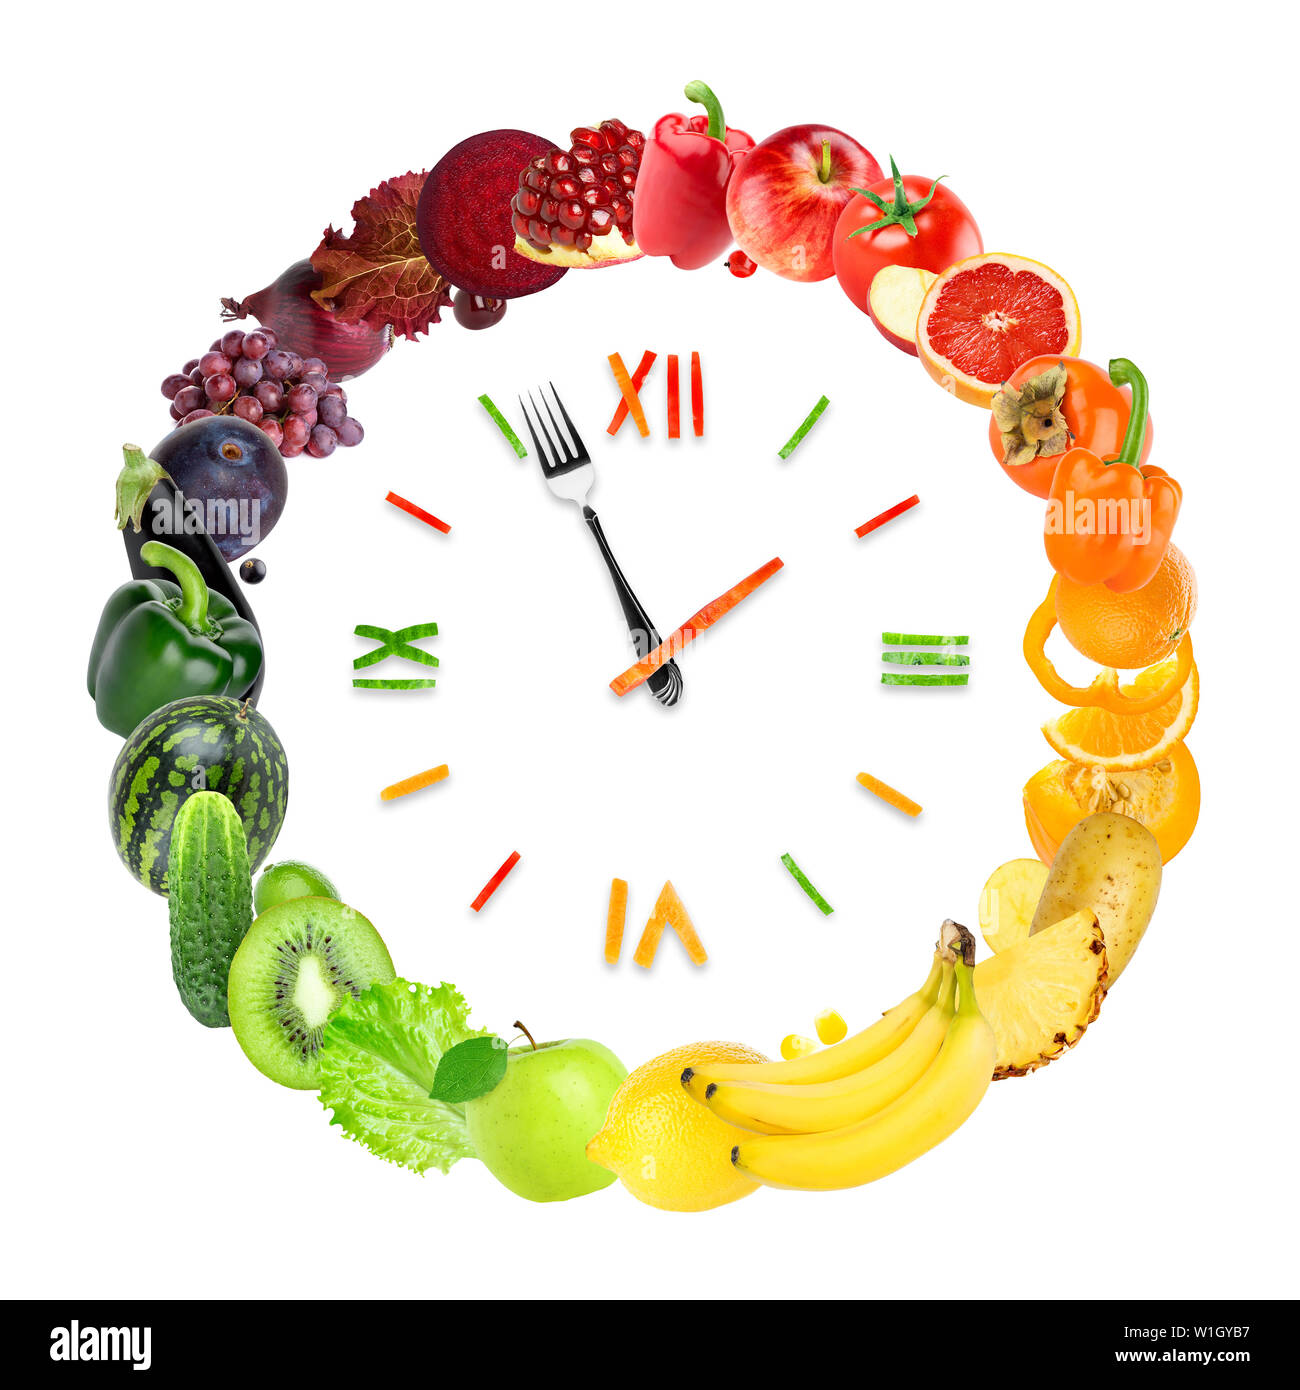 Réveil de l'alimentation avec des fruits et légumes frais. L'alimentation saine Banque D'Images